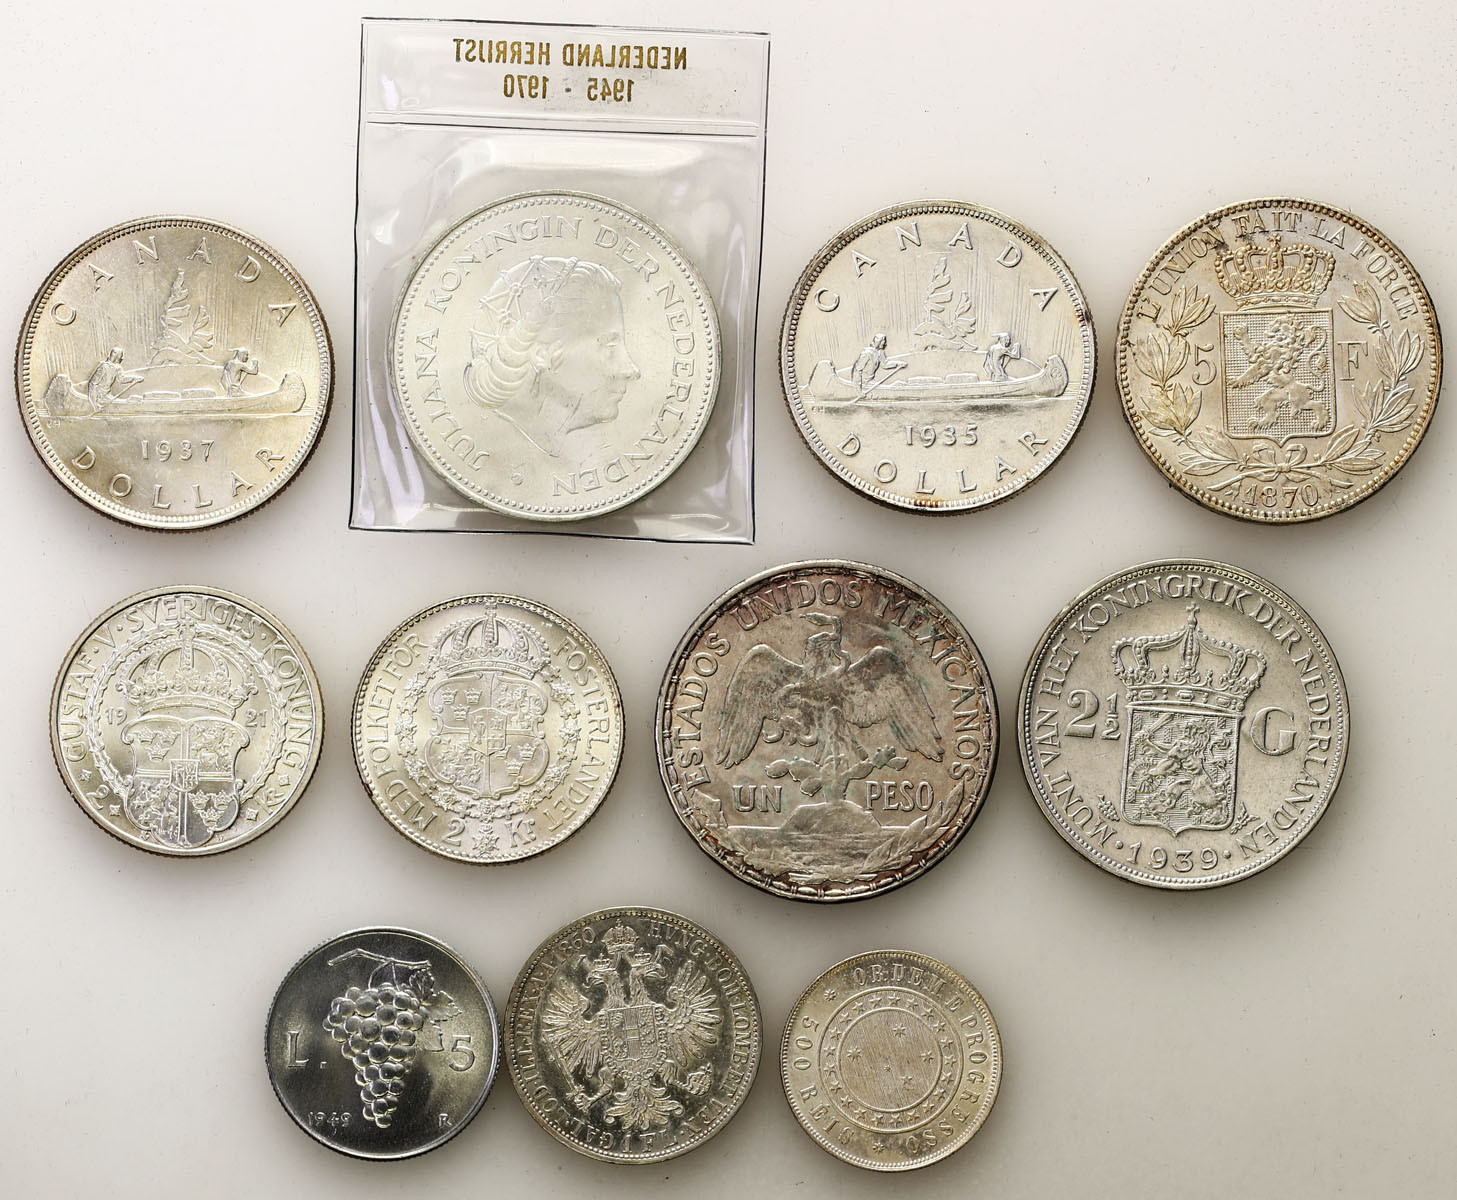 Świat – Austria, Belgia, Kanada, Szwecja, Holandia, Brazylia, Meksyk, Włochy,  zestaw 11 monet, srebro